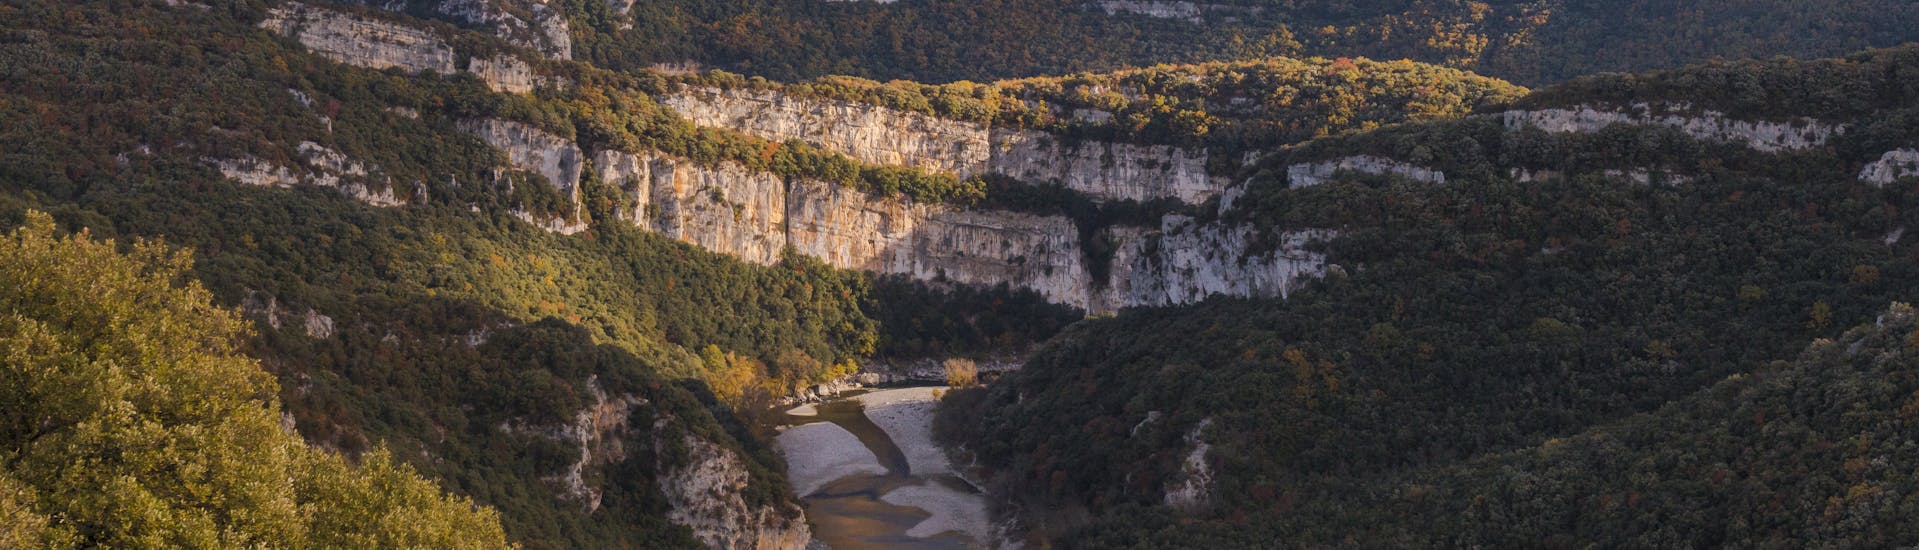 Een gezin huurt een kajak- en kanoverhuur van 32 km in de Ardèche - 2 dagen met bivak met Océanide Canoë.